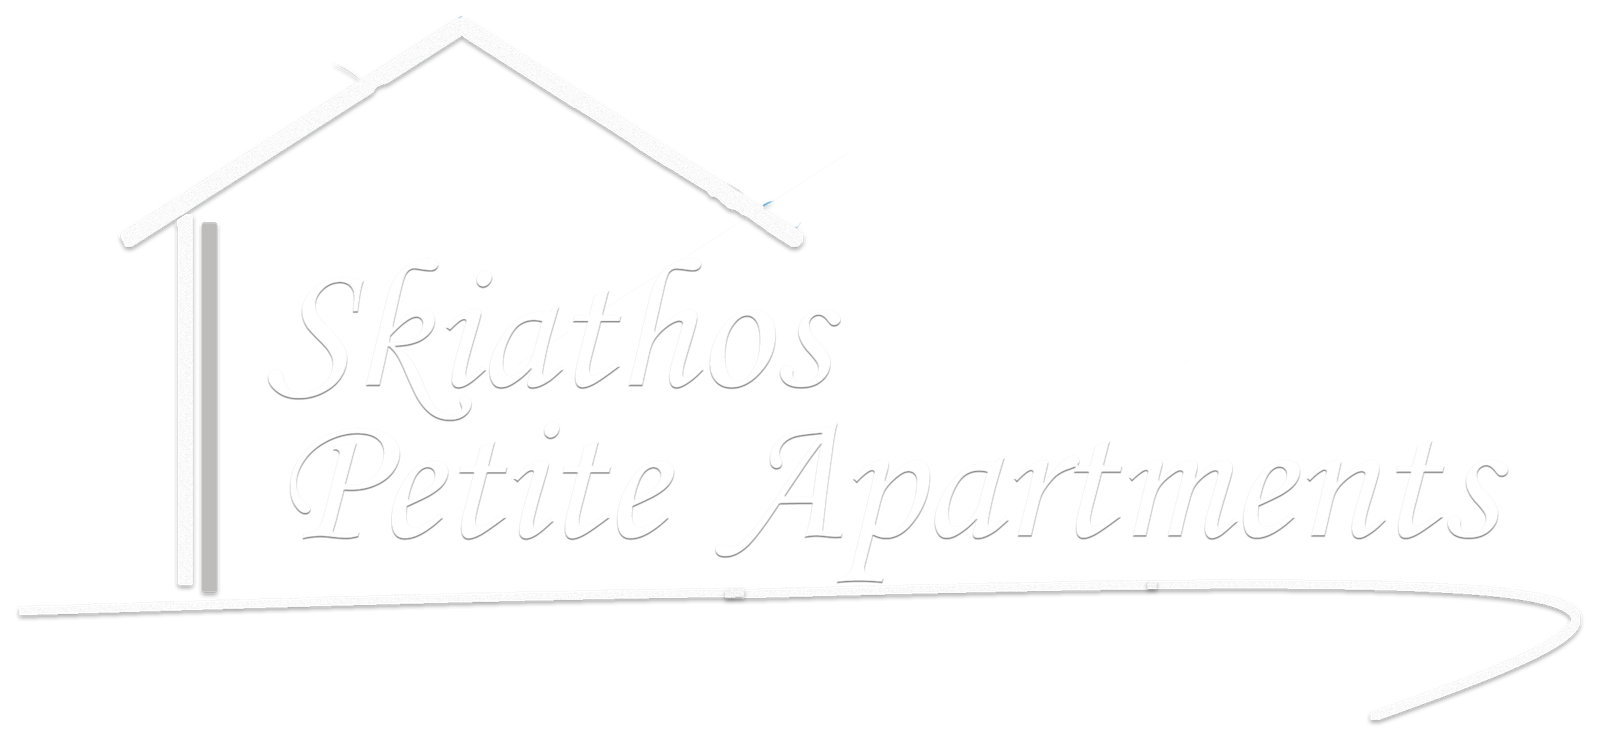 Skiathos Petite Apartments | Cart - Skiathos Petite Apartments